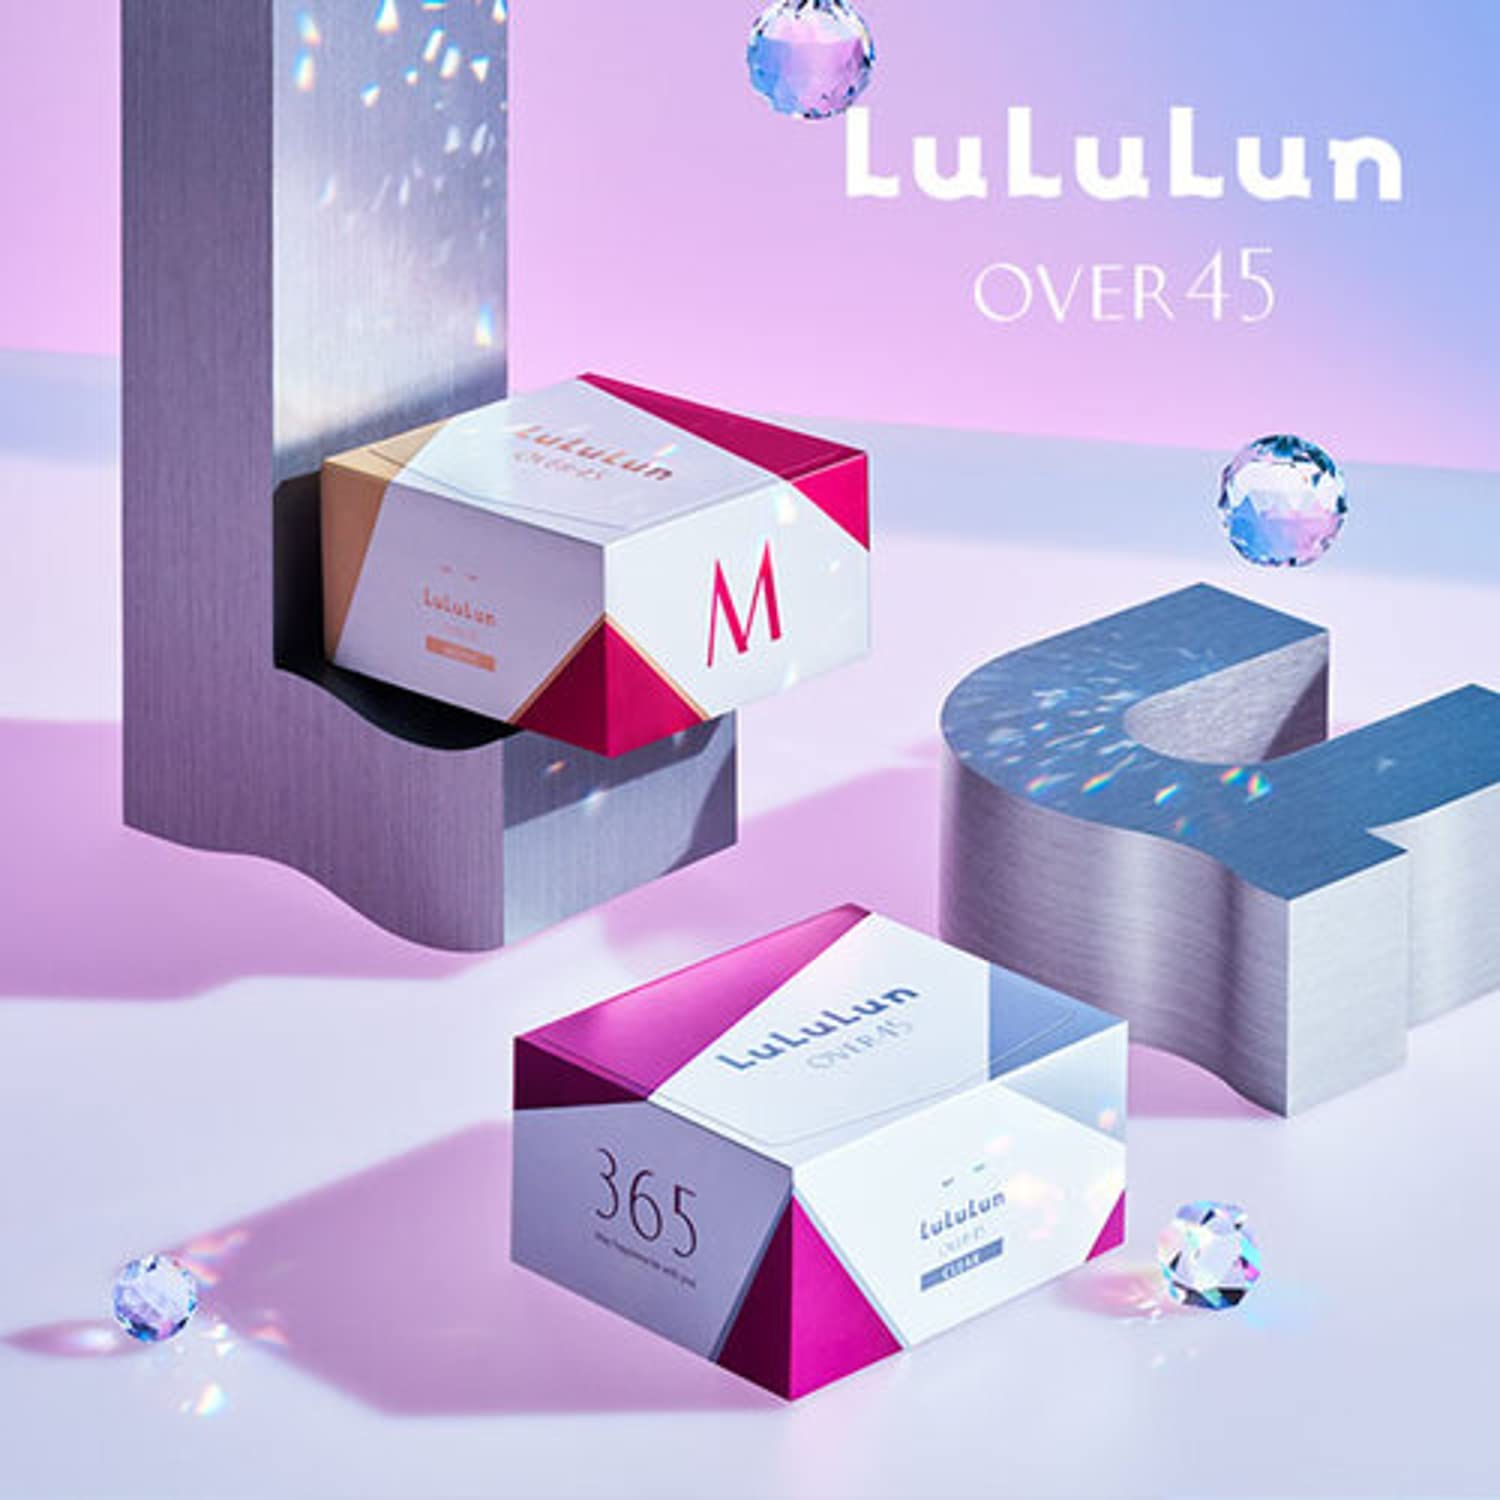 LuLuLun(ルルルン) Over45 アイリスブルー(クリア)の商品画像2 